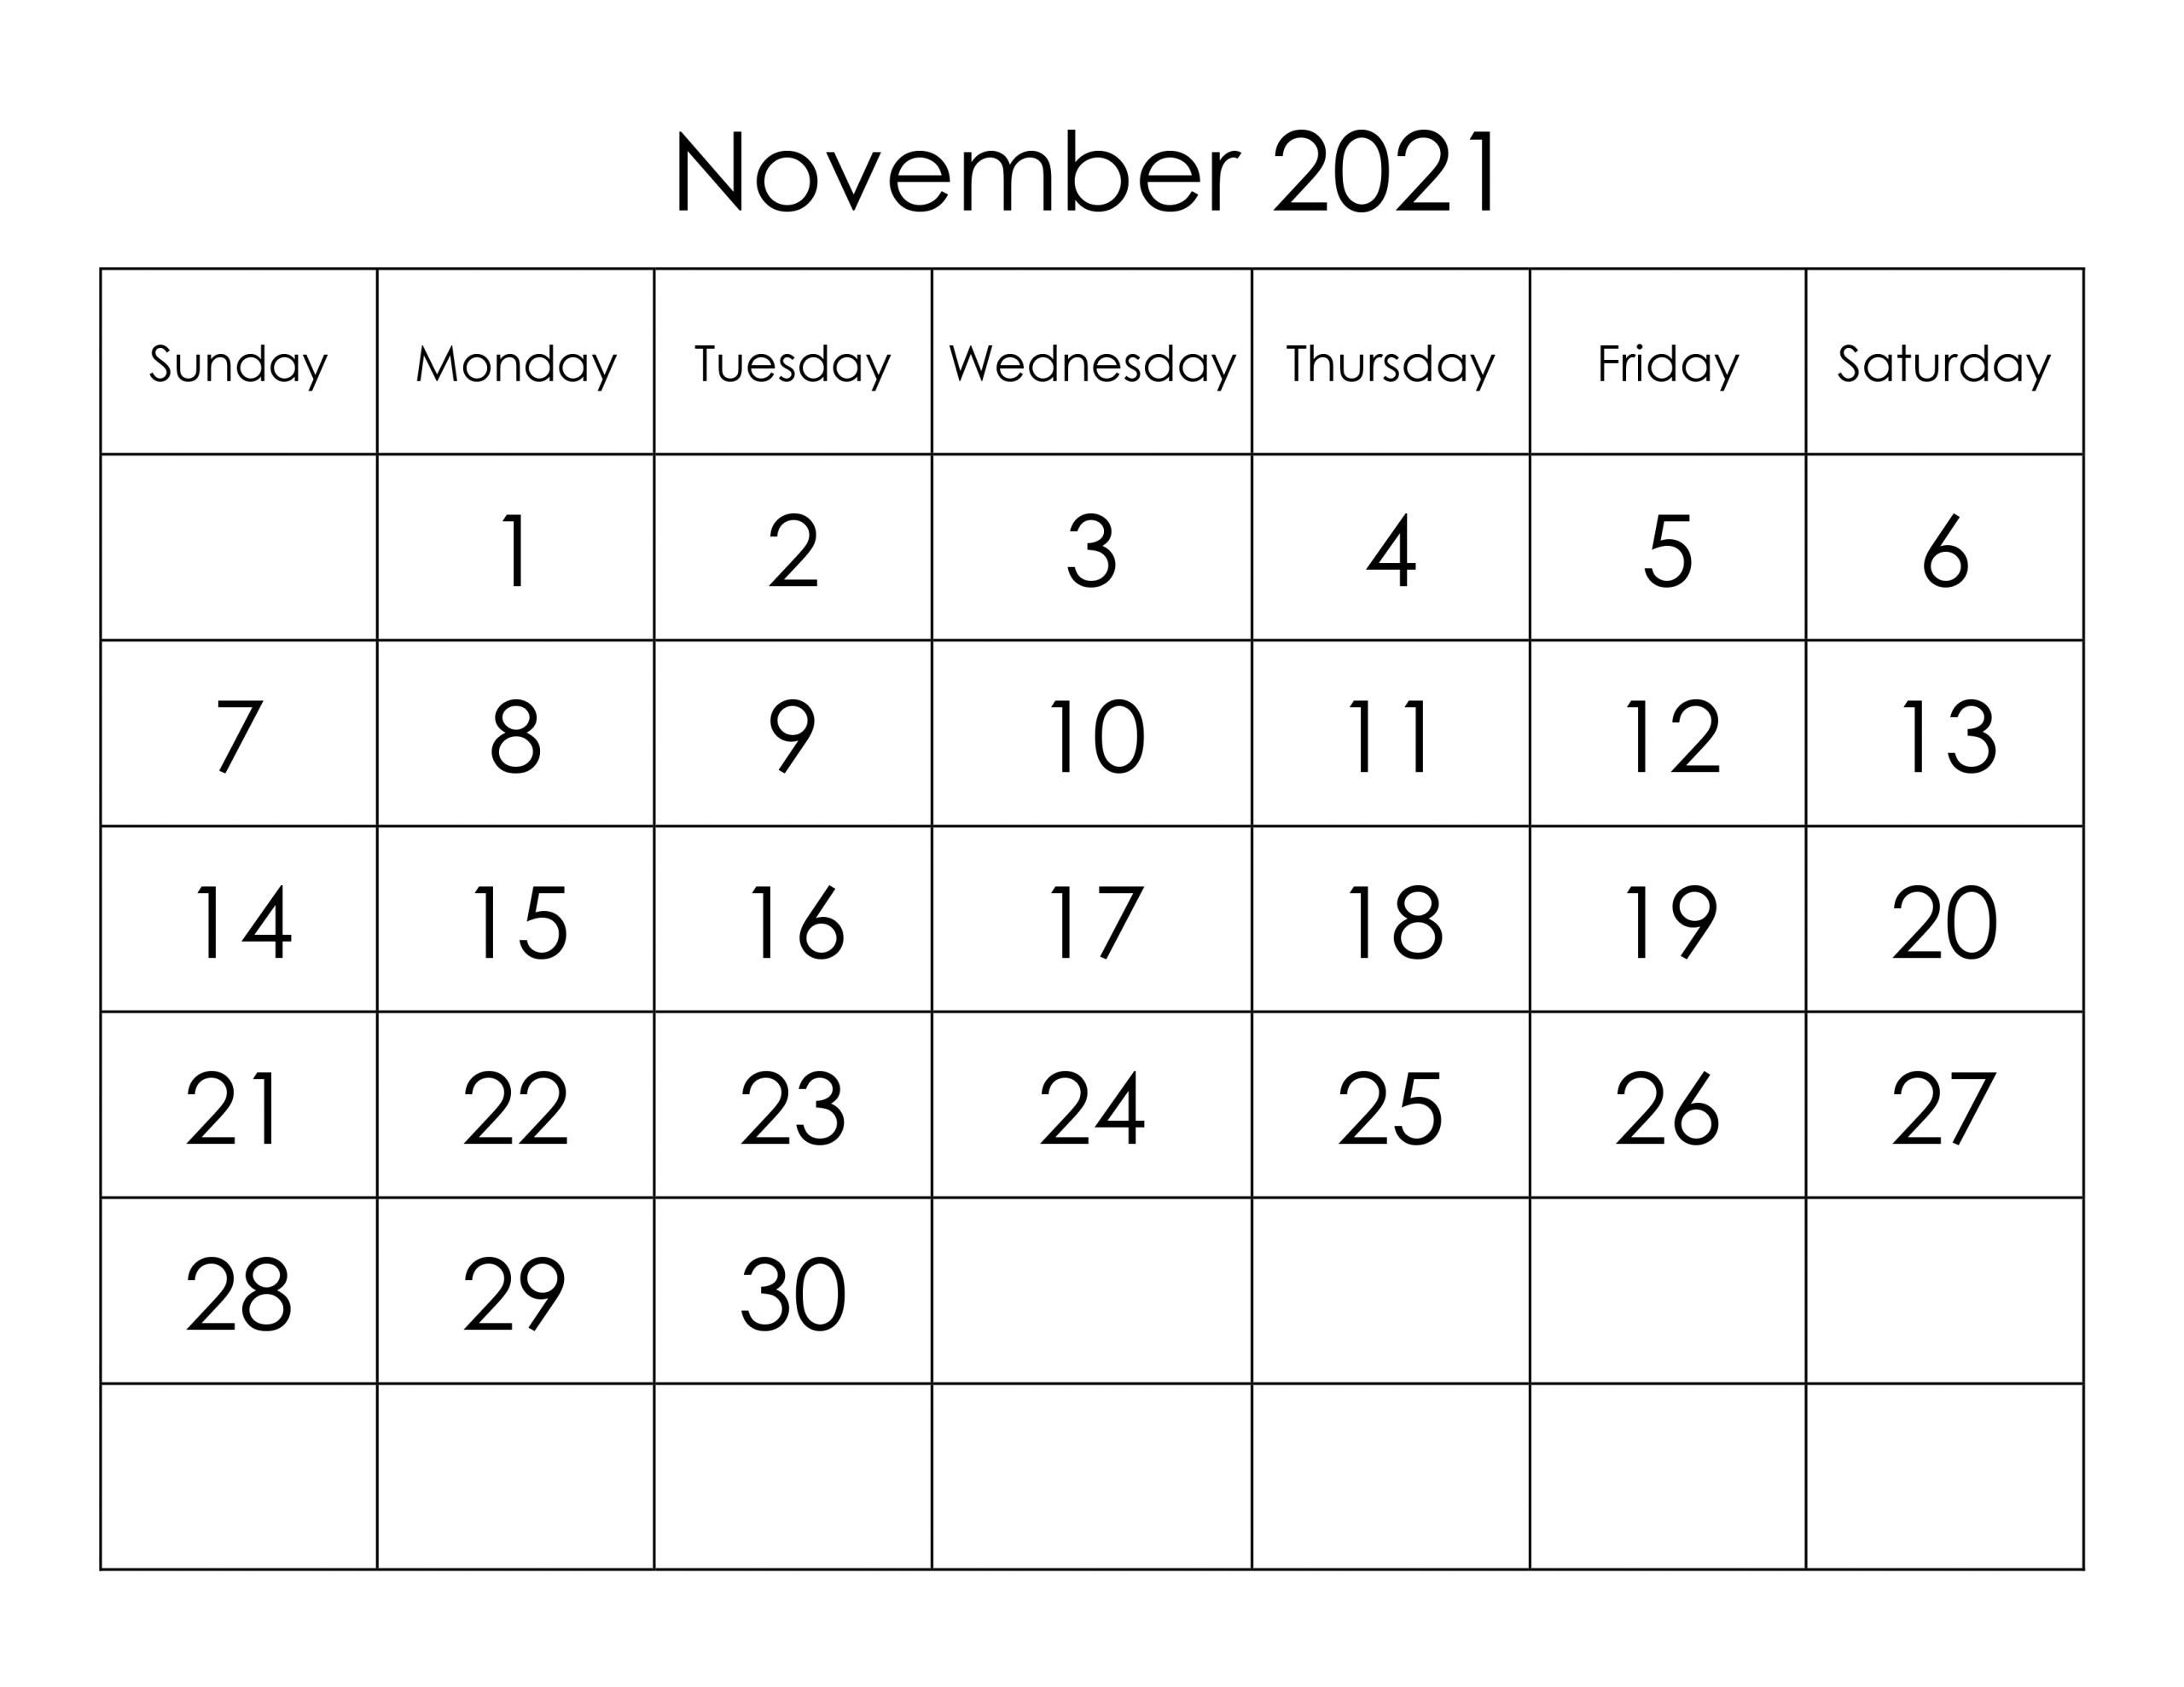 Calendar For November 2021 - Free-Calendar.su November 2021 Calendar Page